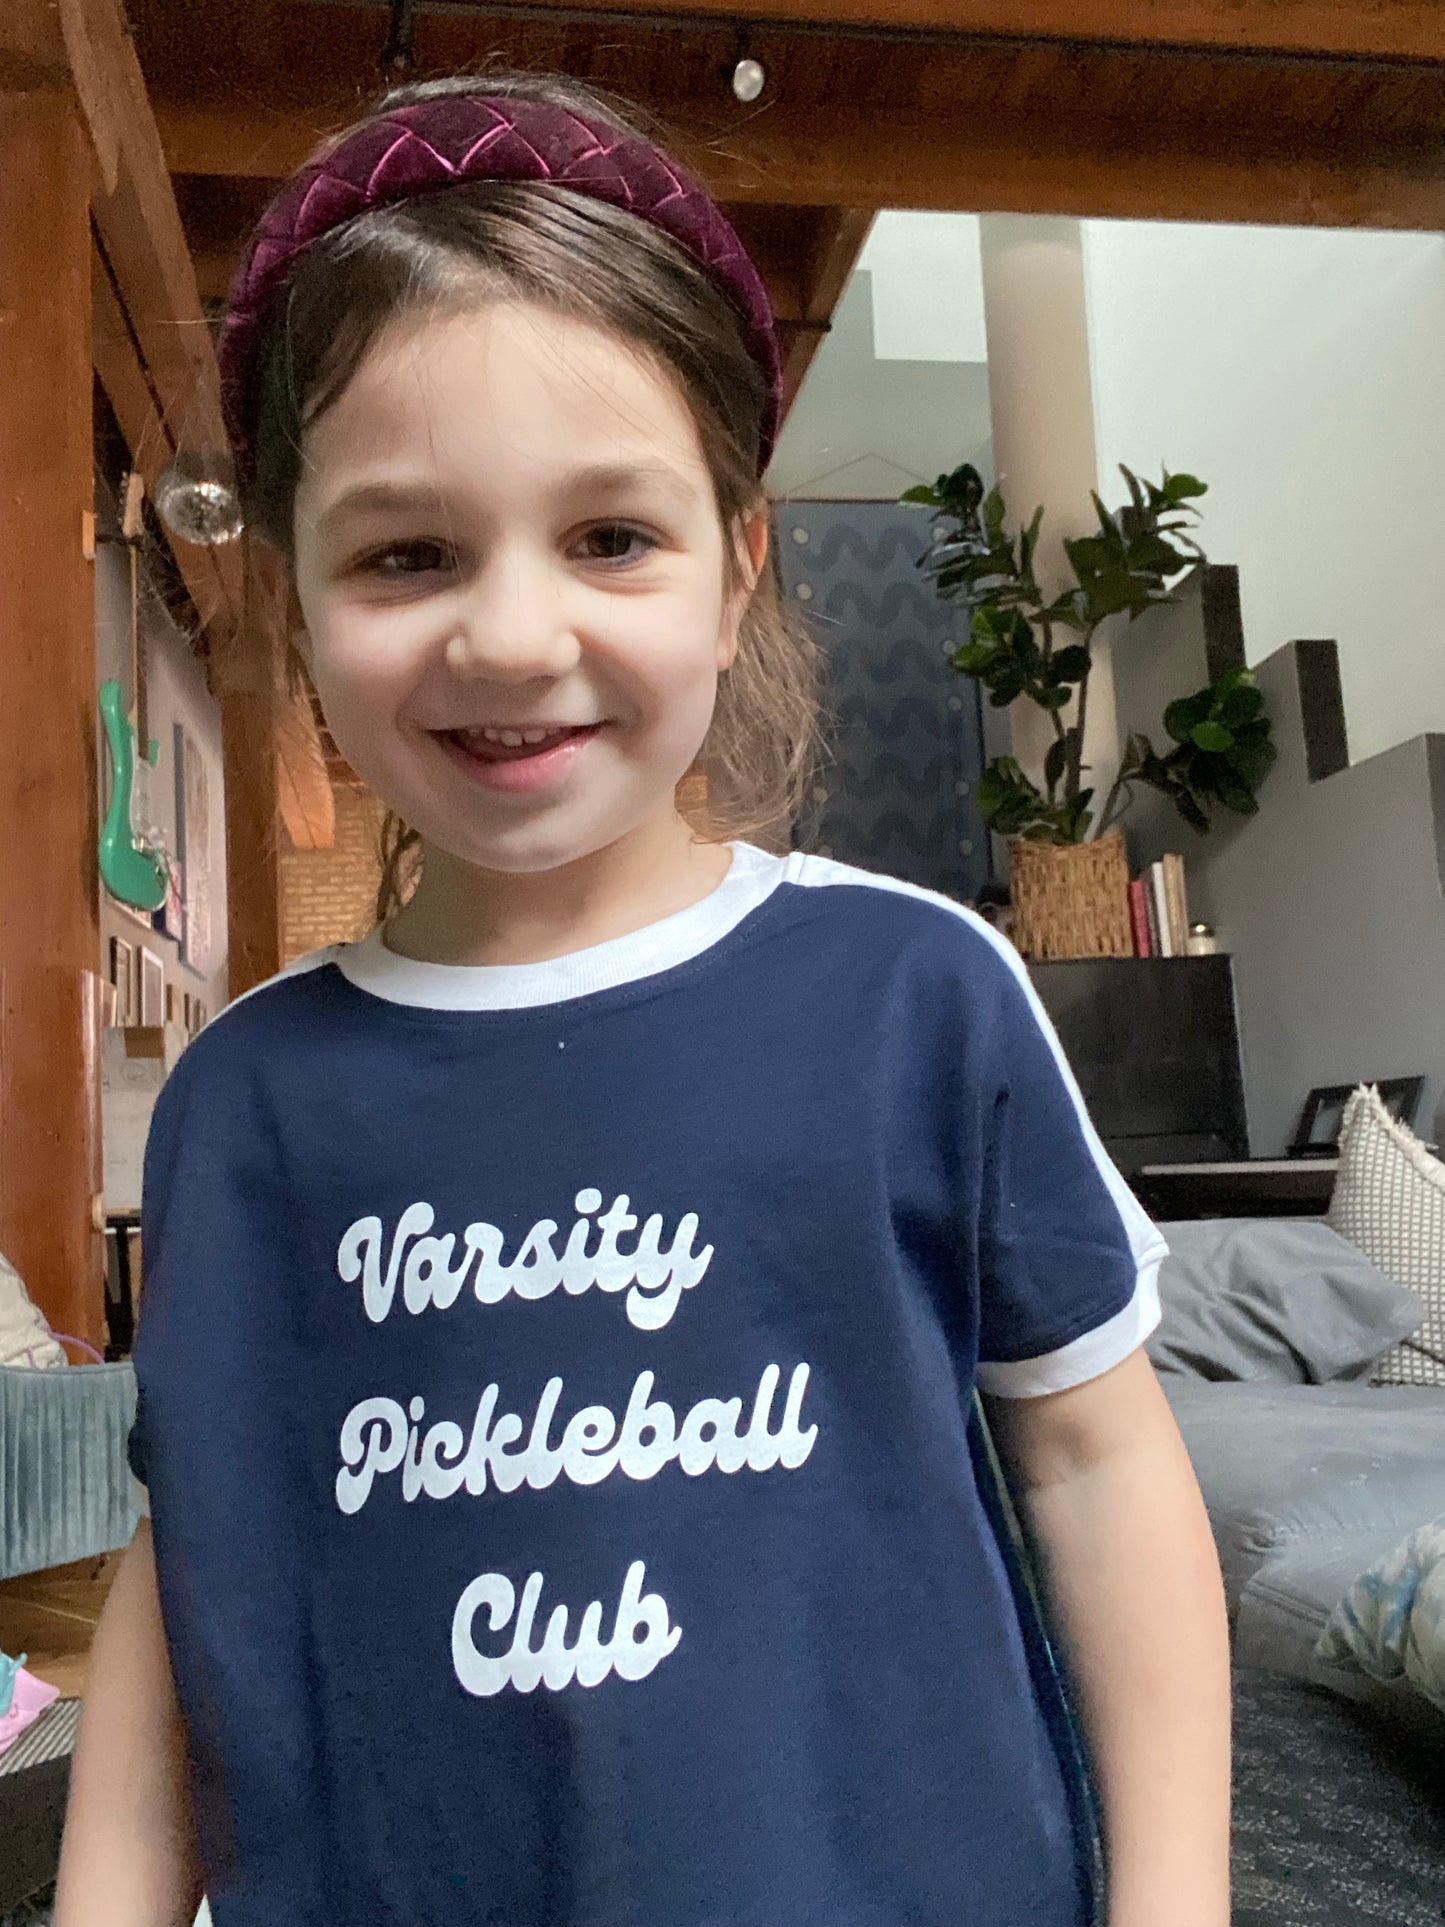 Kids' Varsity Pickleball Club Ringer T-Shirt